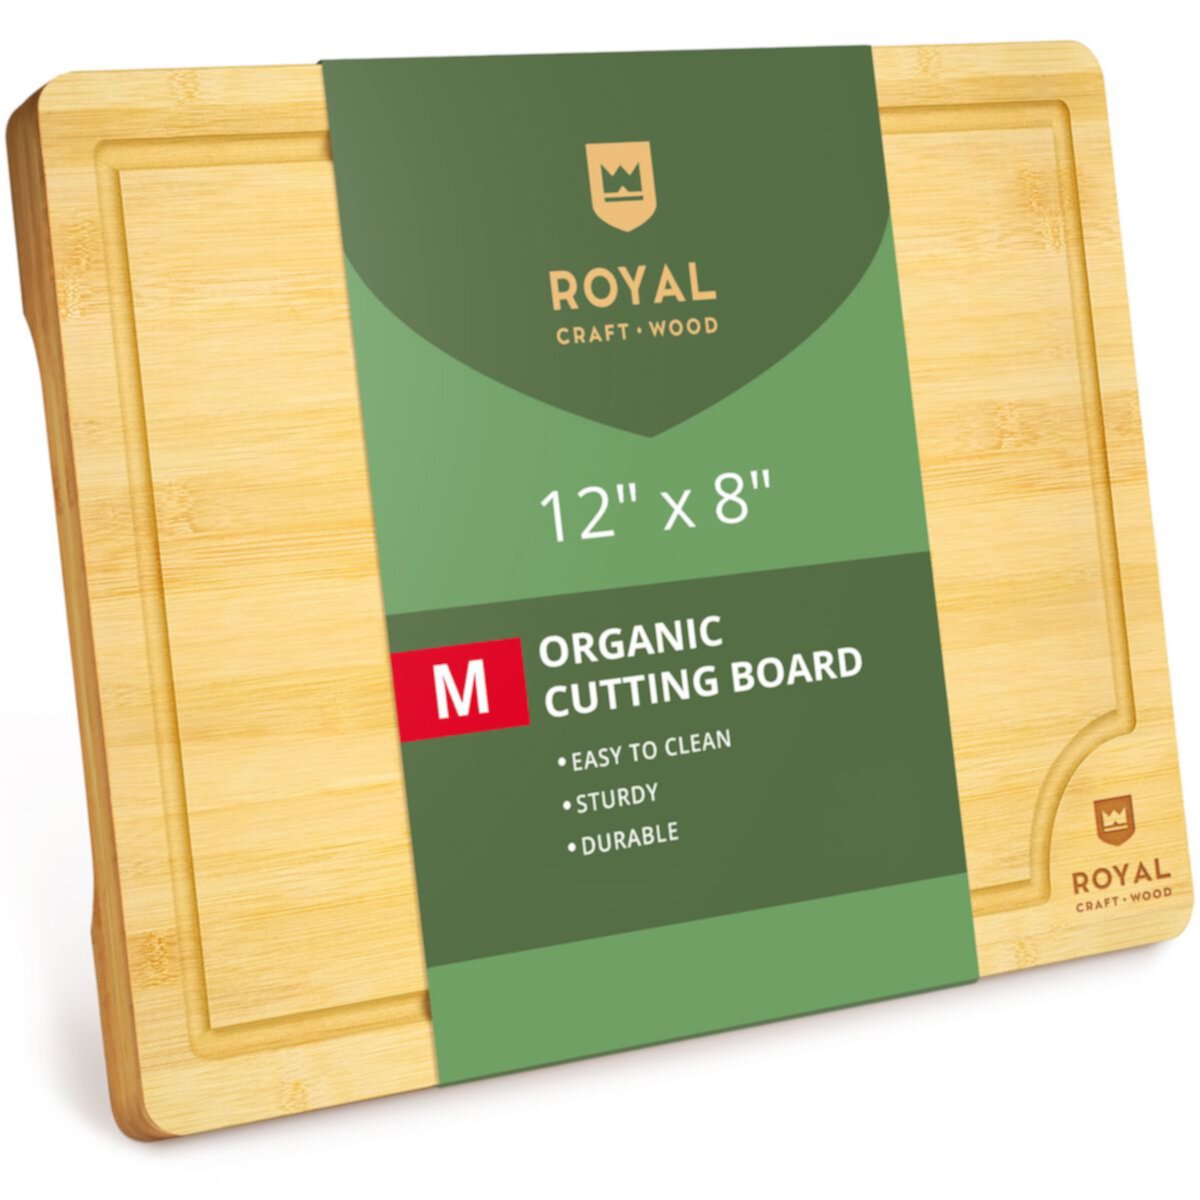 Cutting Board M, 12”x8” Royal Craft Wood